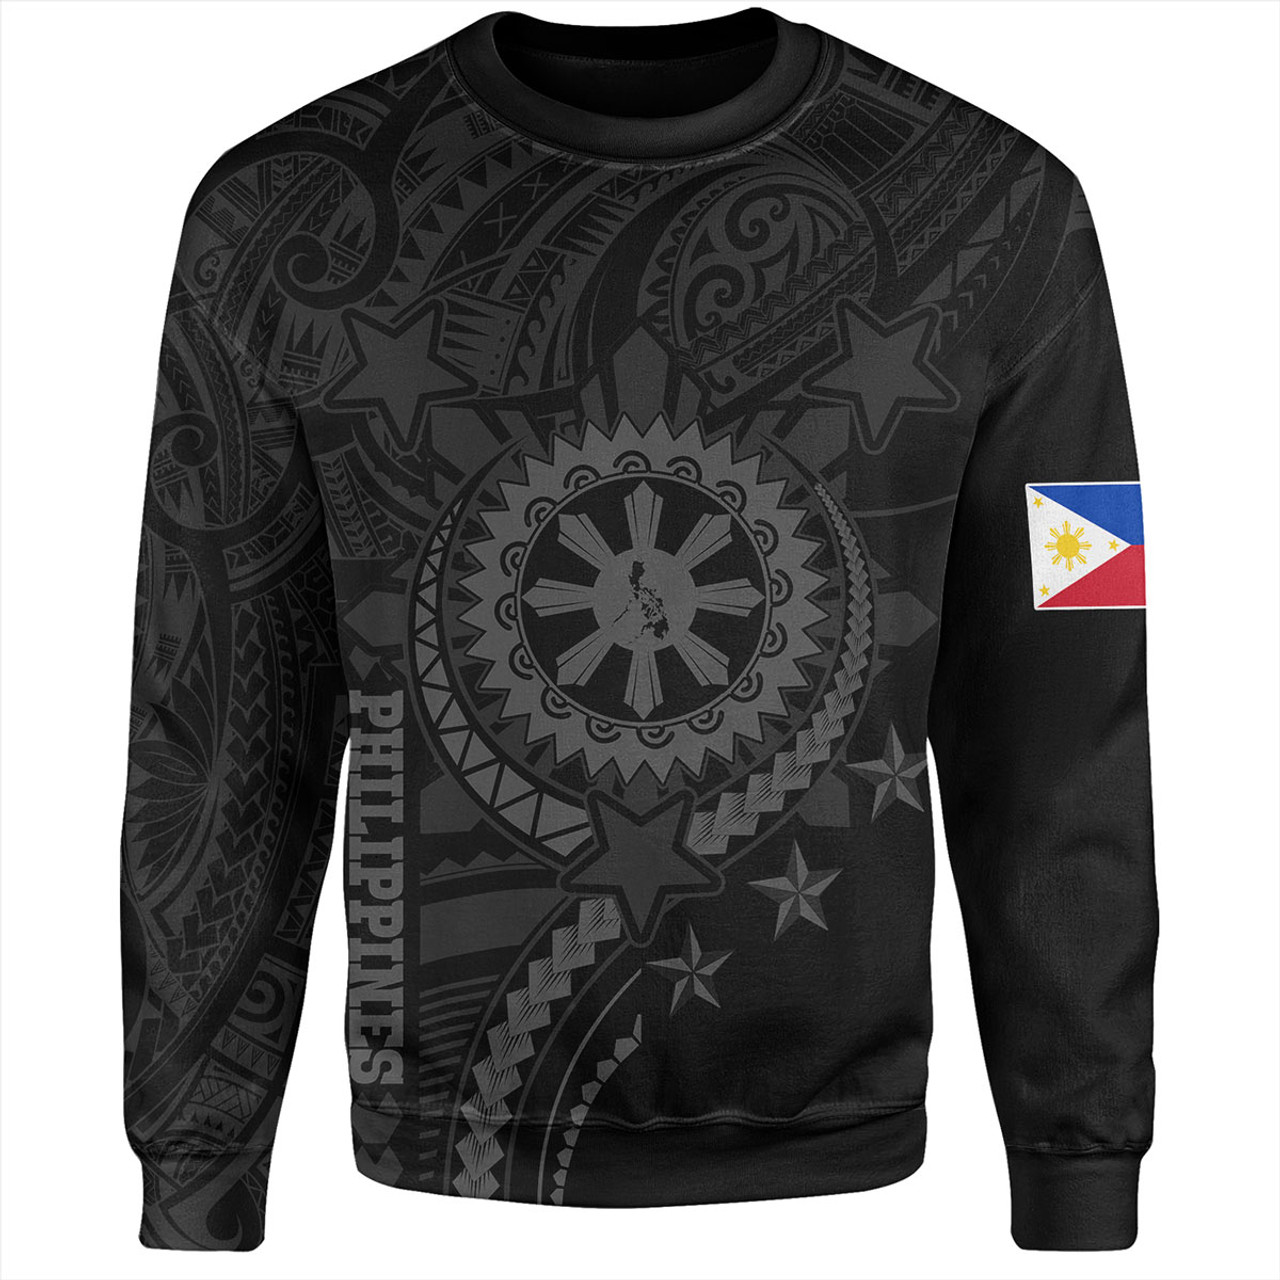 Philippines Filipinos Sweatshirt - Proud To Be Filipino Tribal Sun Batok Grey Style